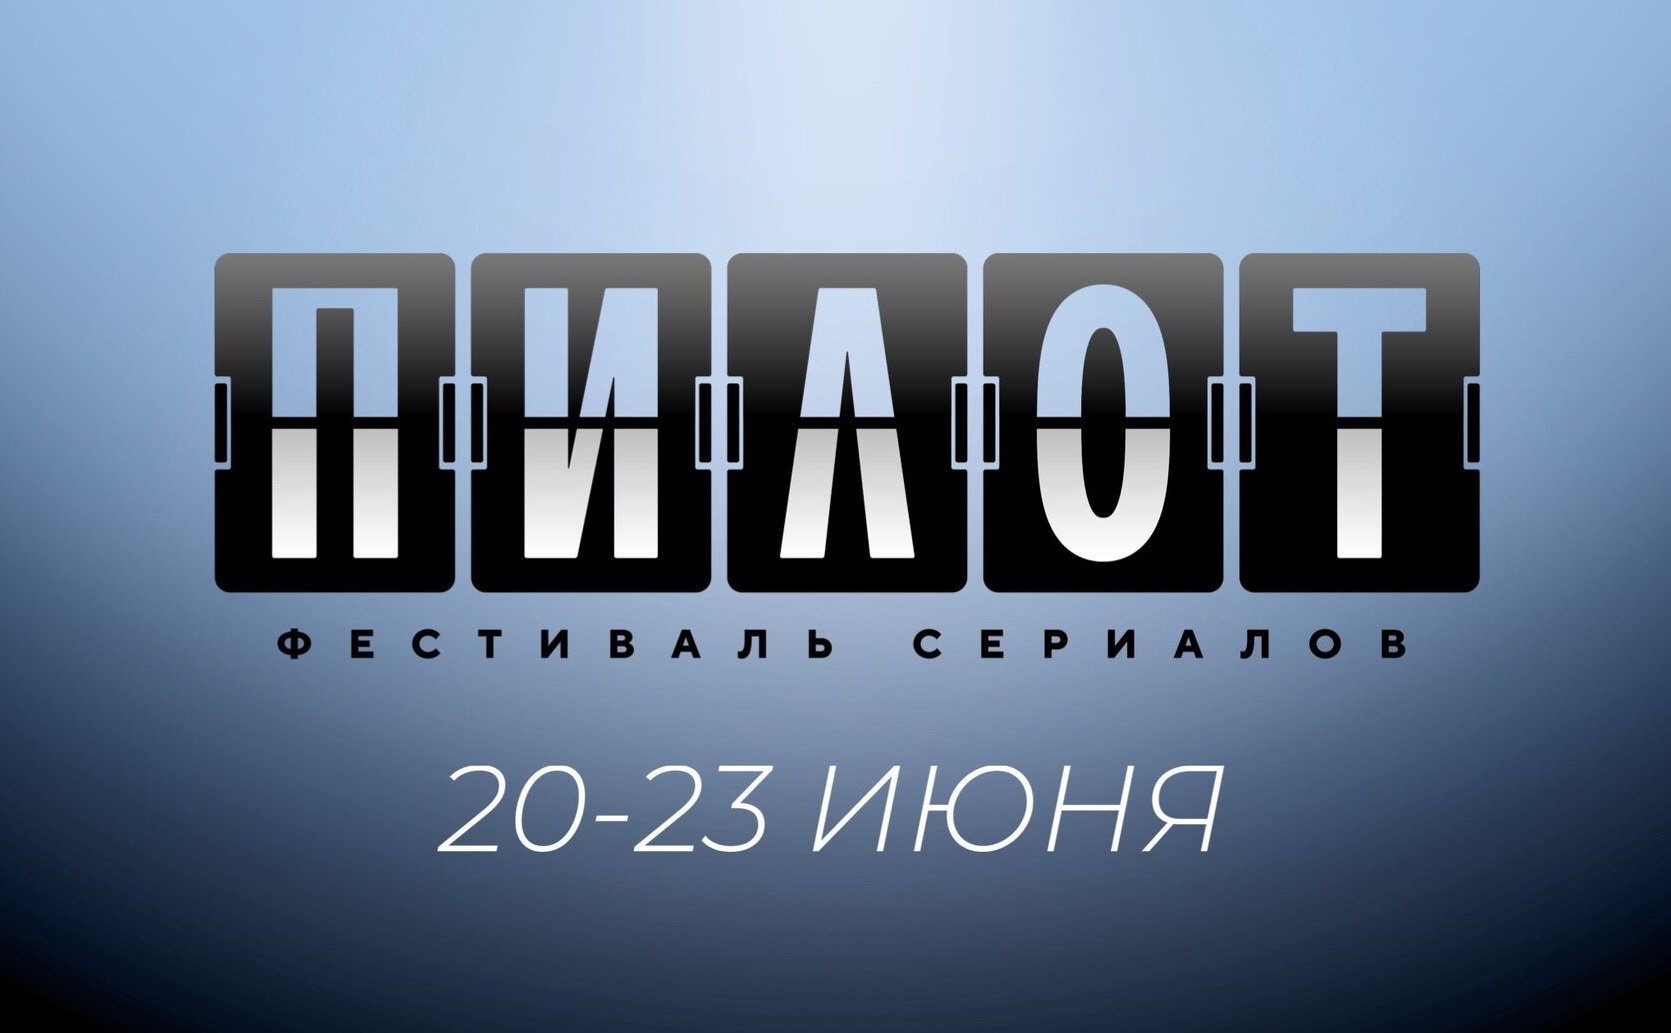 Фестиваль сериалов "Пилот" в этом году пройдет в Иванове с 20 по 23 июня